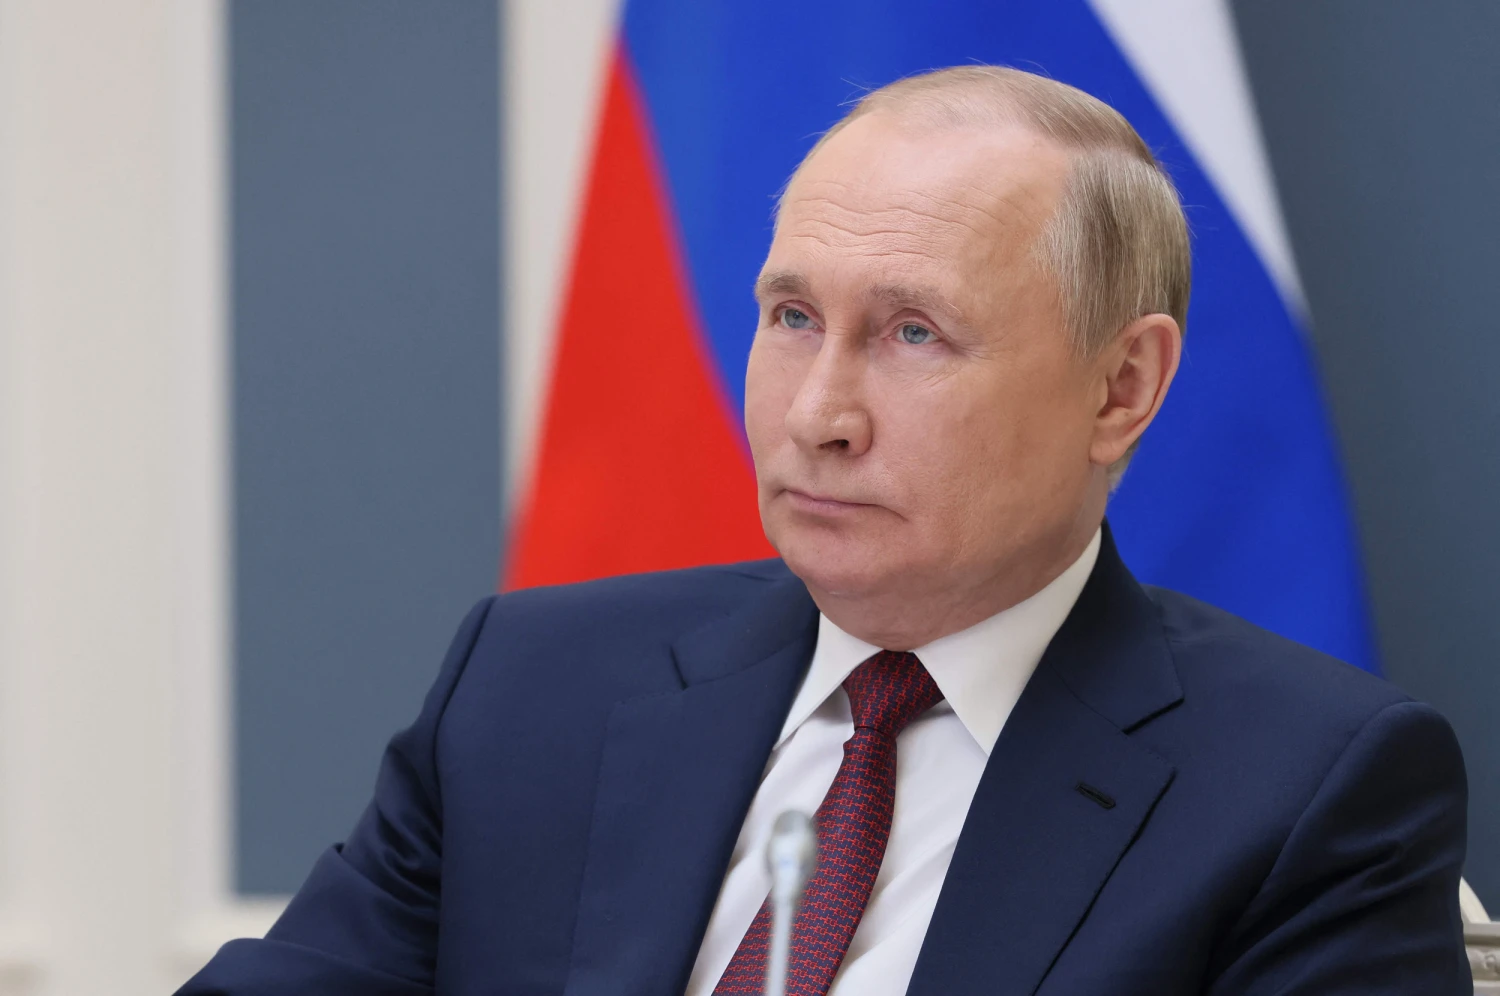 Β.Πούτιν: «Η αποδολαριοποίηση των οικονομικών δεσμών των BRICS είναι μη αναστρέψιμη διαδικασία»